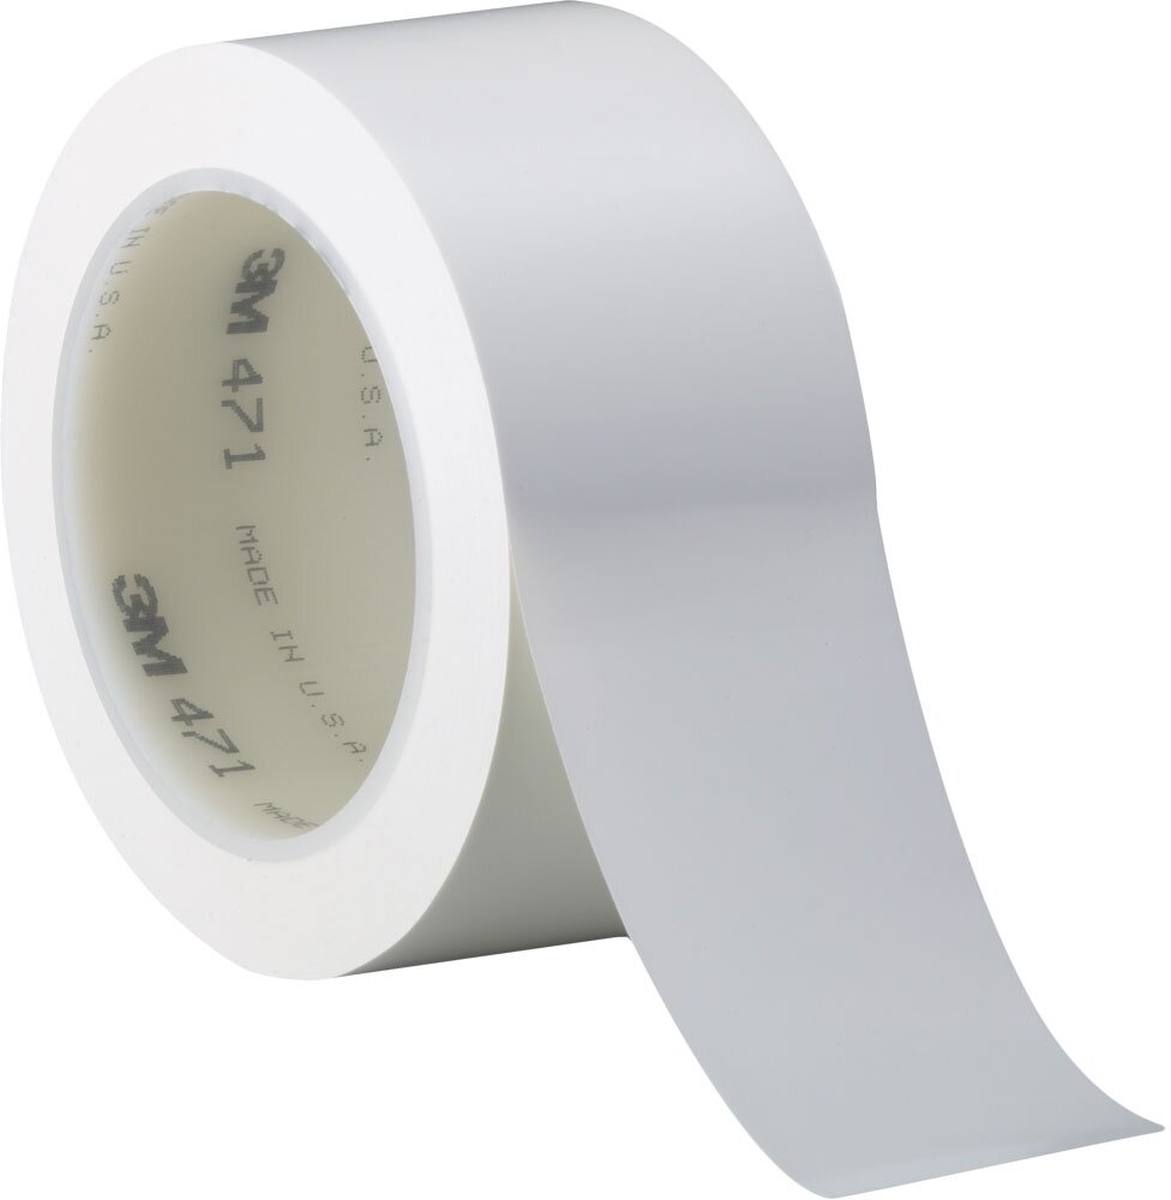 Nastro adesivo 3M in PVC morbido 471 F, bianco, 9 mm x 33 m, 0,13 mm